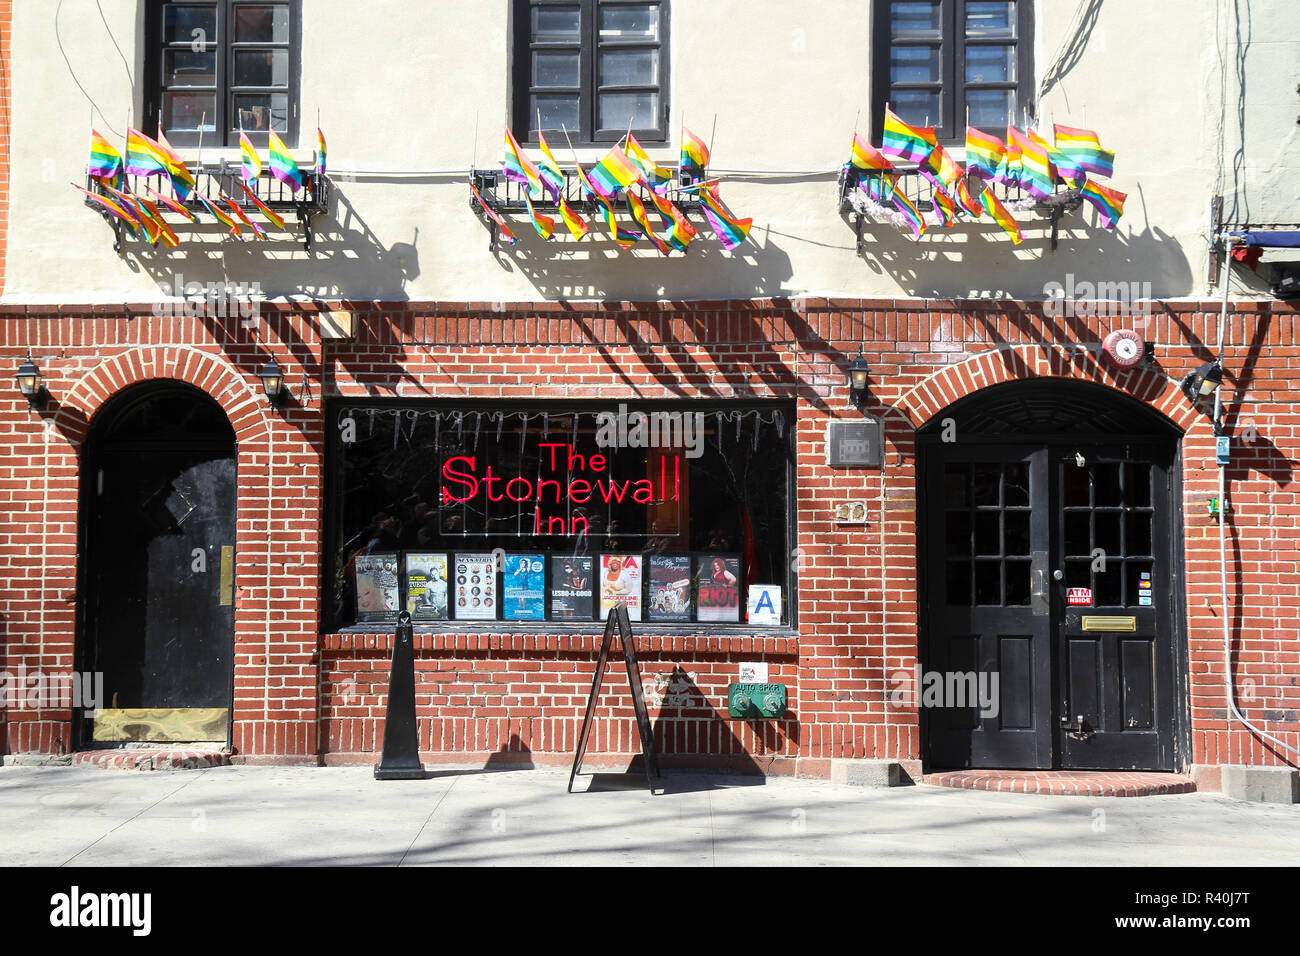 El Stonewall Inn, en Greenwich Village, Nueva York, Estados Unidos. Sitio de los disturbios de Stonewall en 1969, importantes en la lucha por los derechos de LGBT. Foto de stock